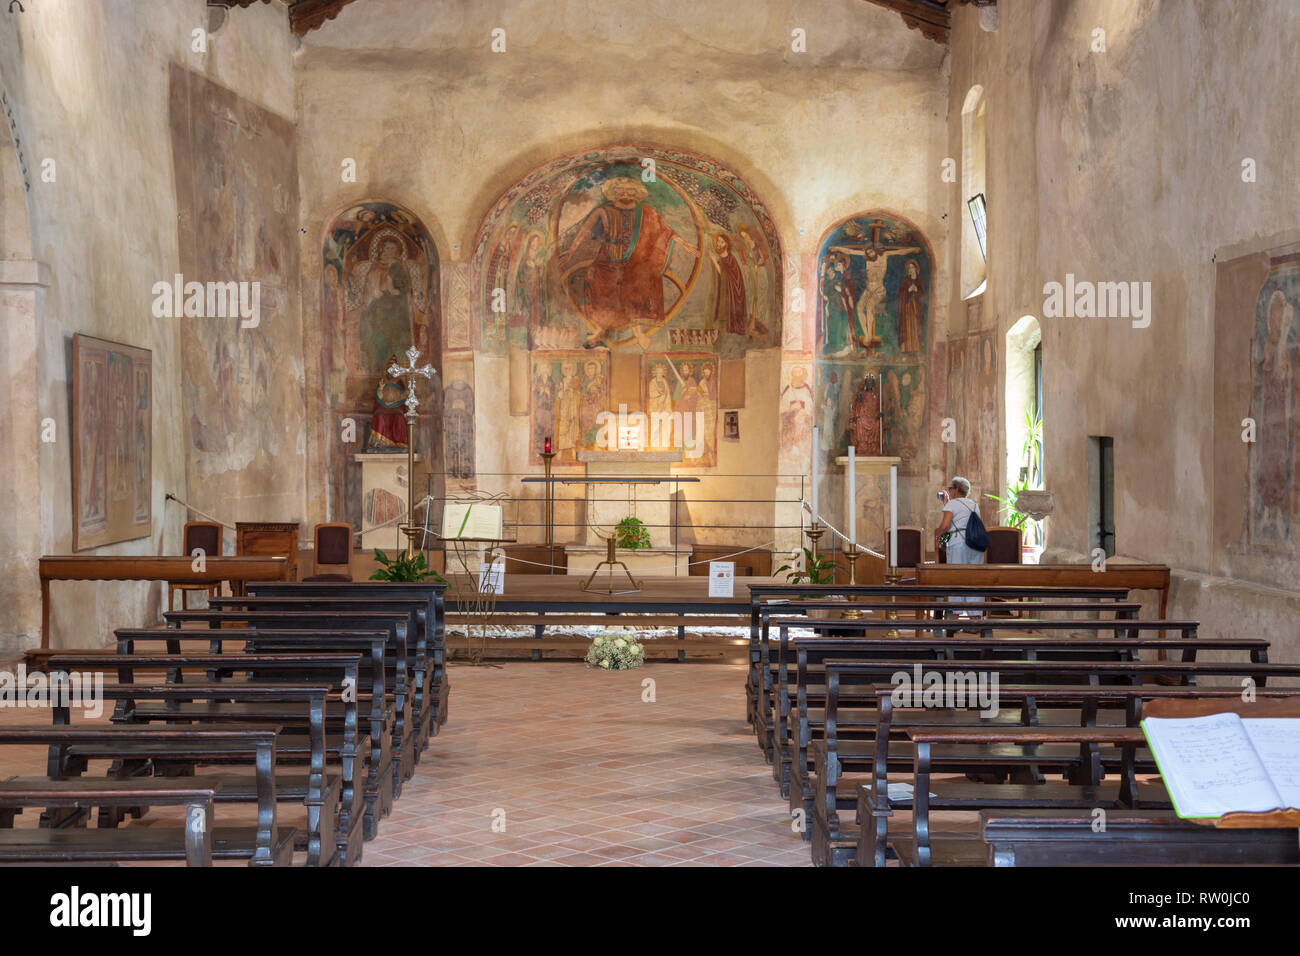 The Chiesa di San Pietro church in Sirmione on Lake Garda Stock Photo